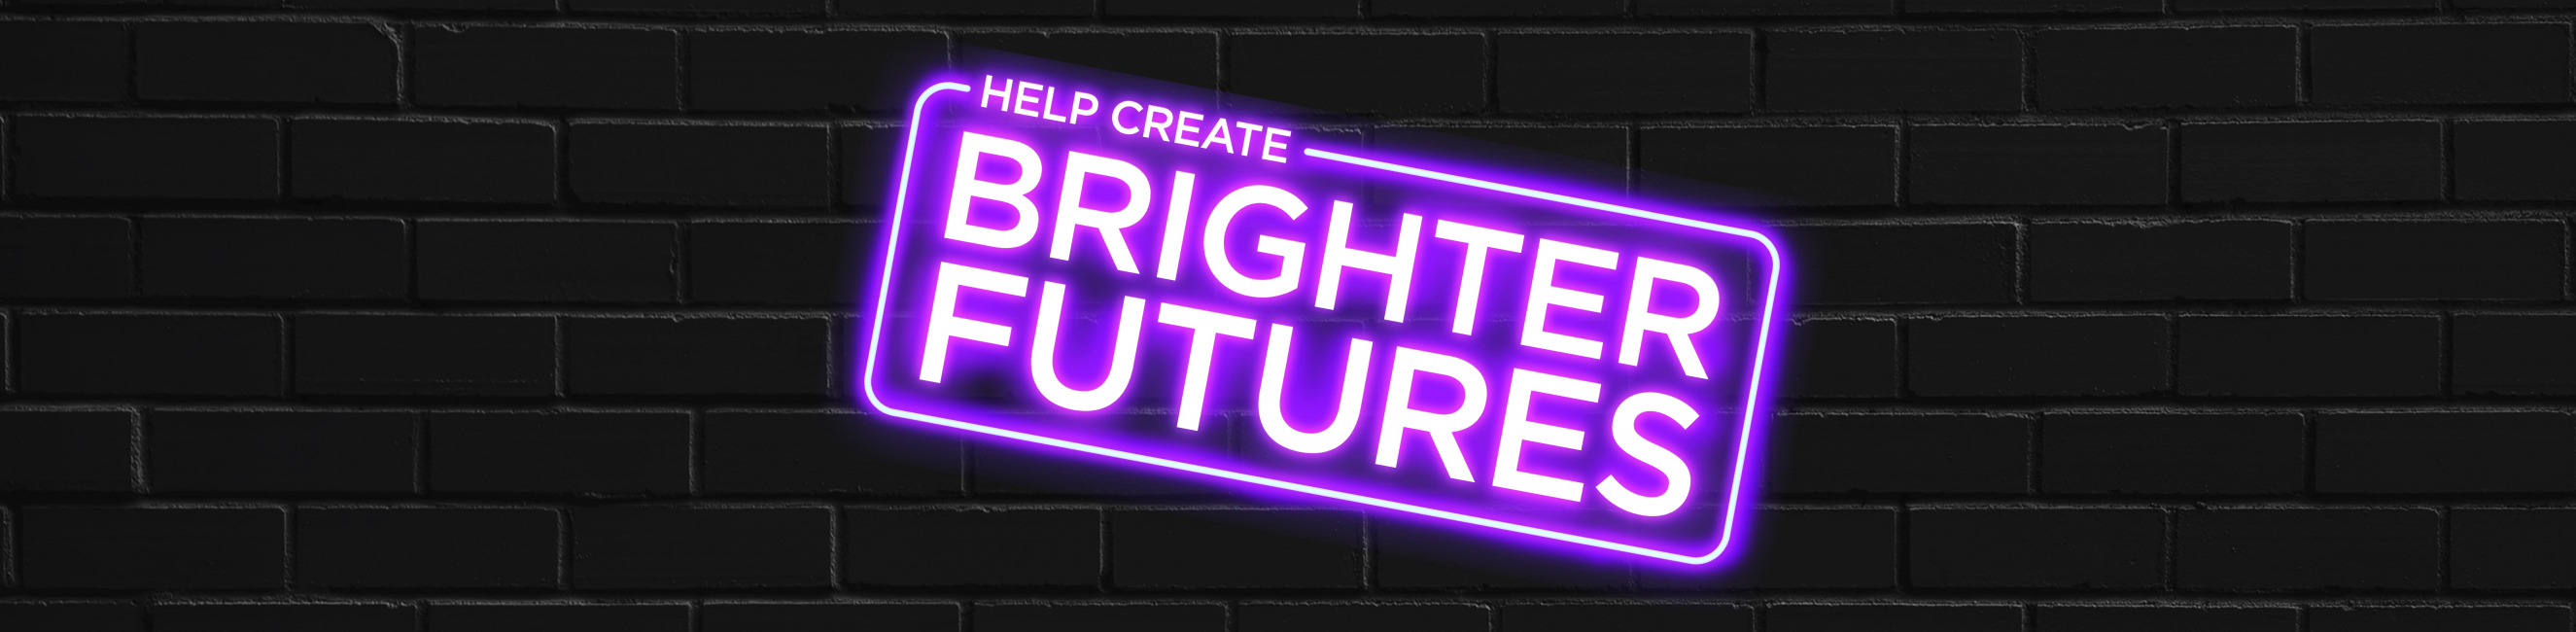 Help center, brighter futures 